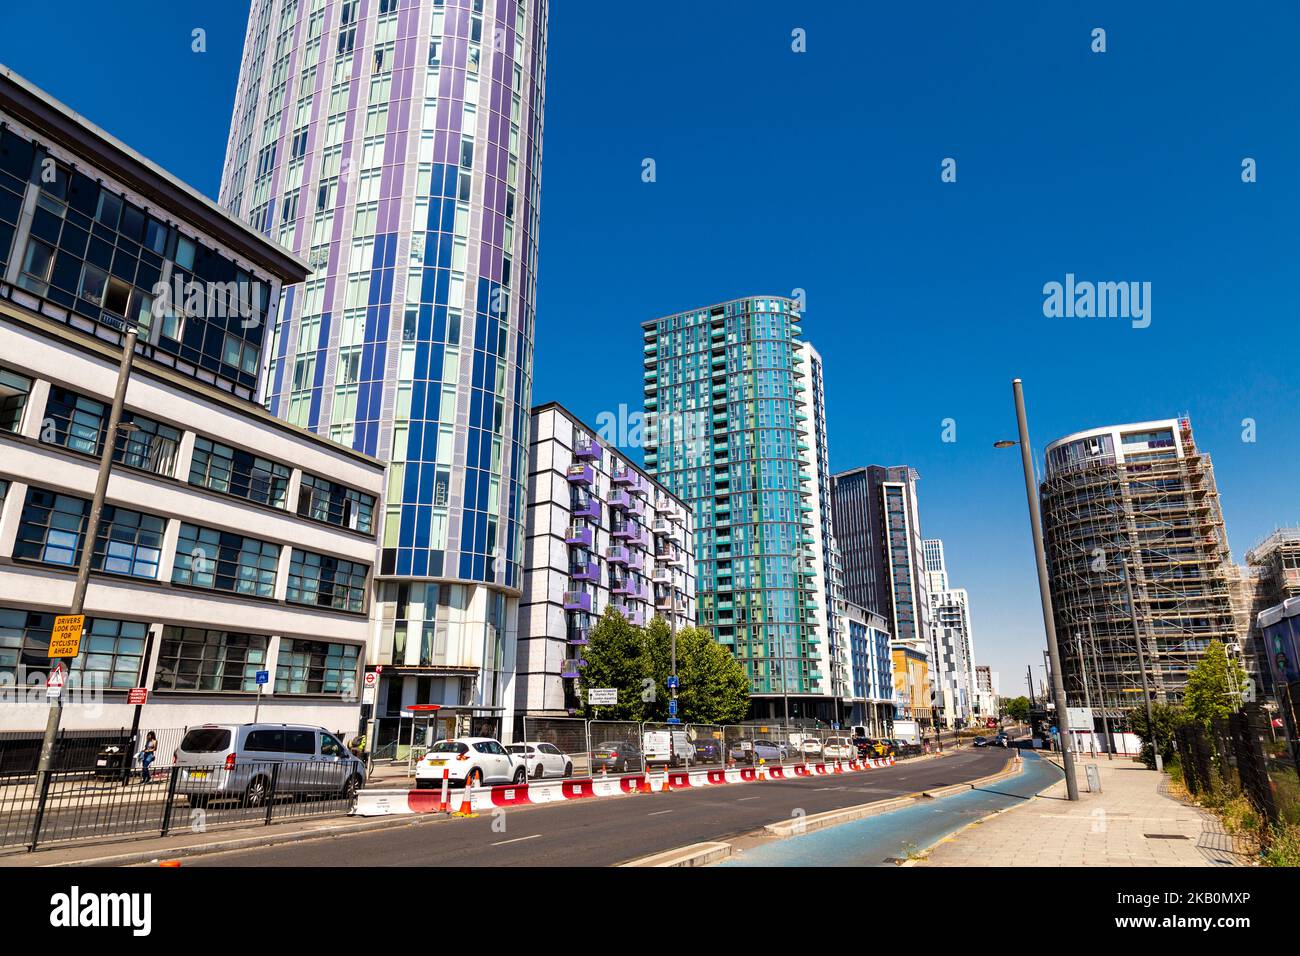 Wohntürme (Halo Tower, One Eighty Stratford, Aspire Point) entlang der Stratford High Street, London, Großbritannien Stockfoto